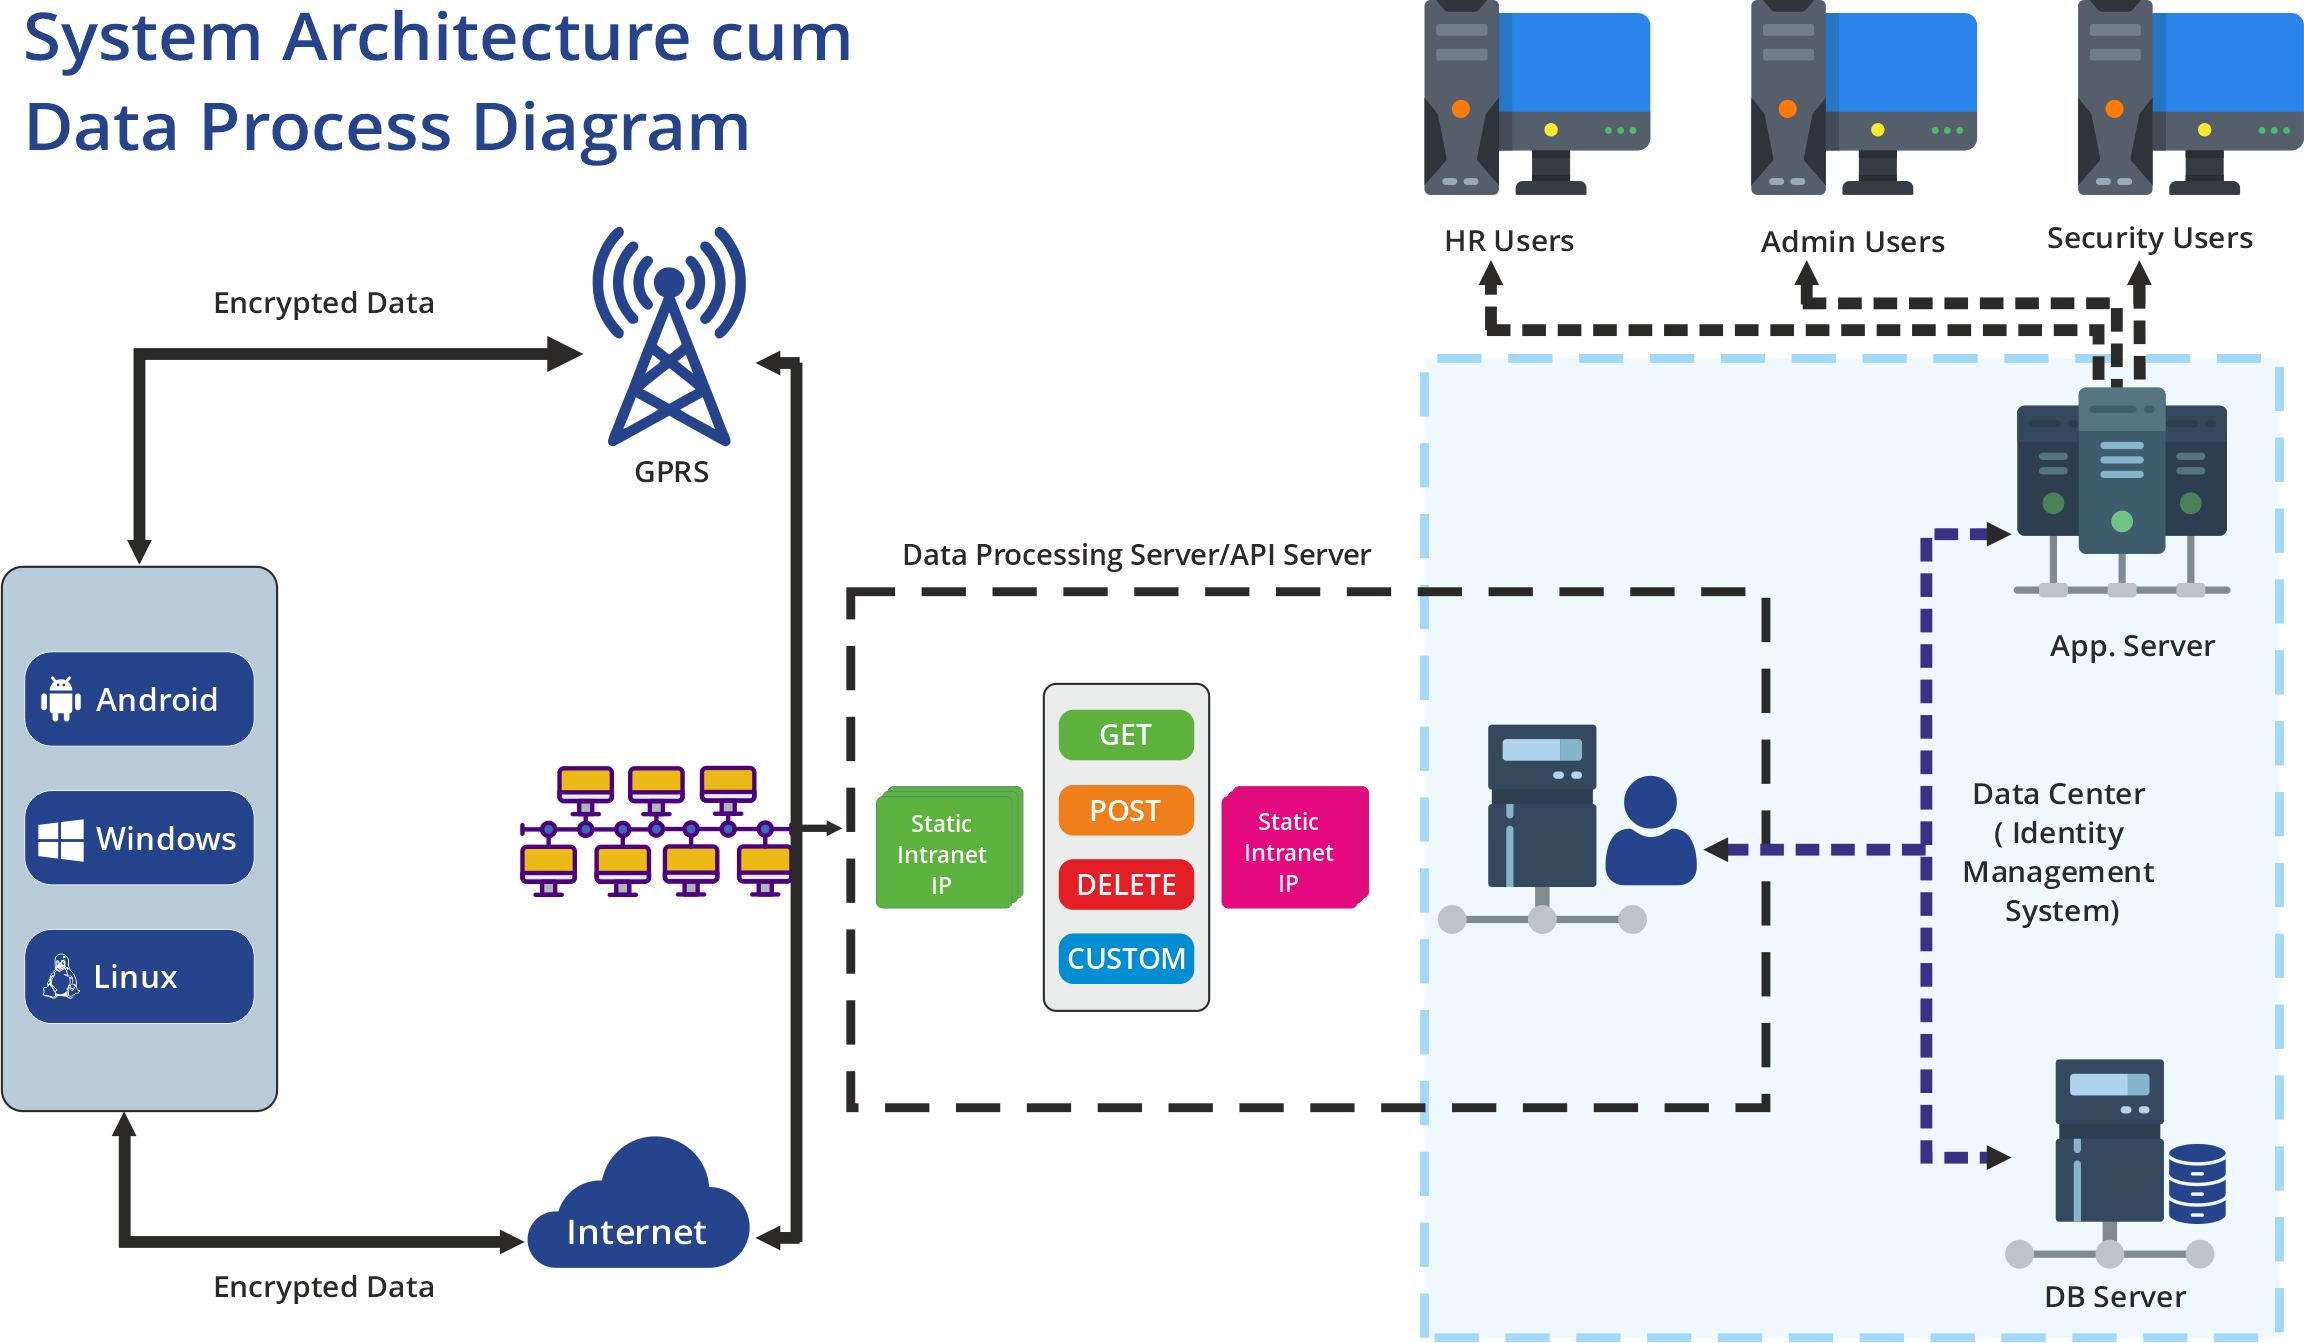 System Architecture cum Data Process Diagram